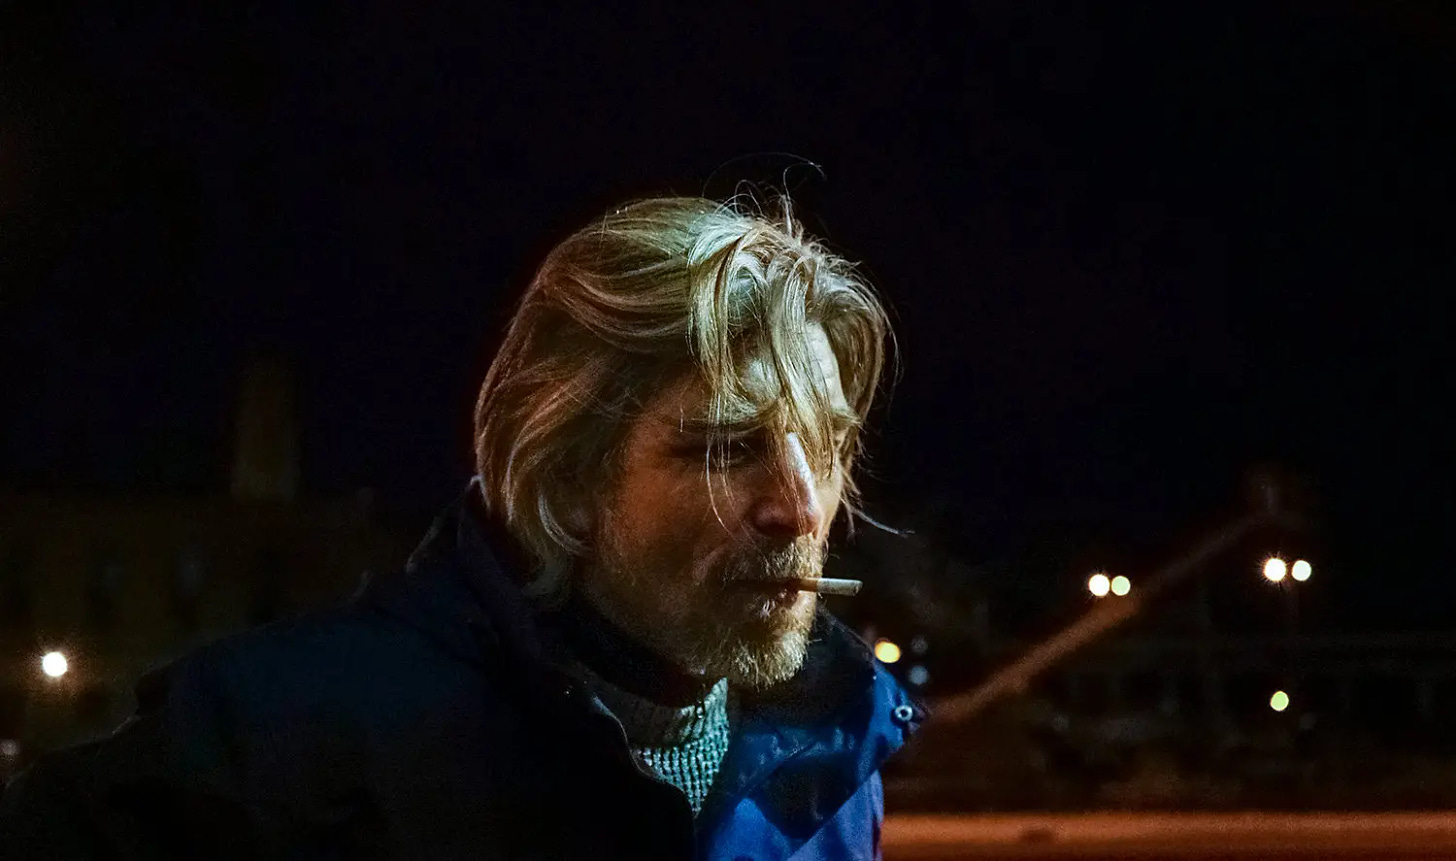 Knausgaard smoking a cigarette